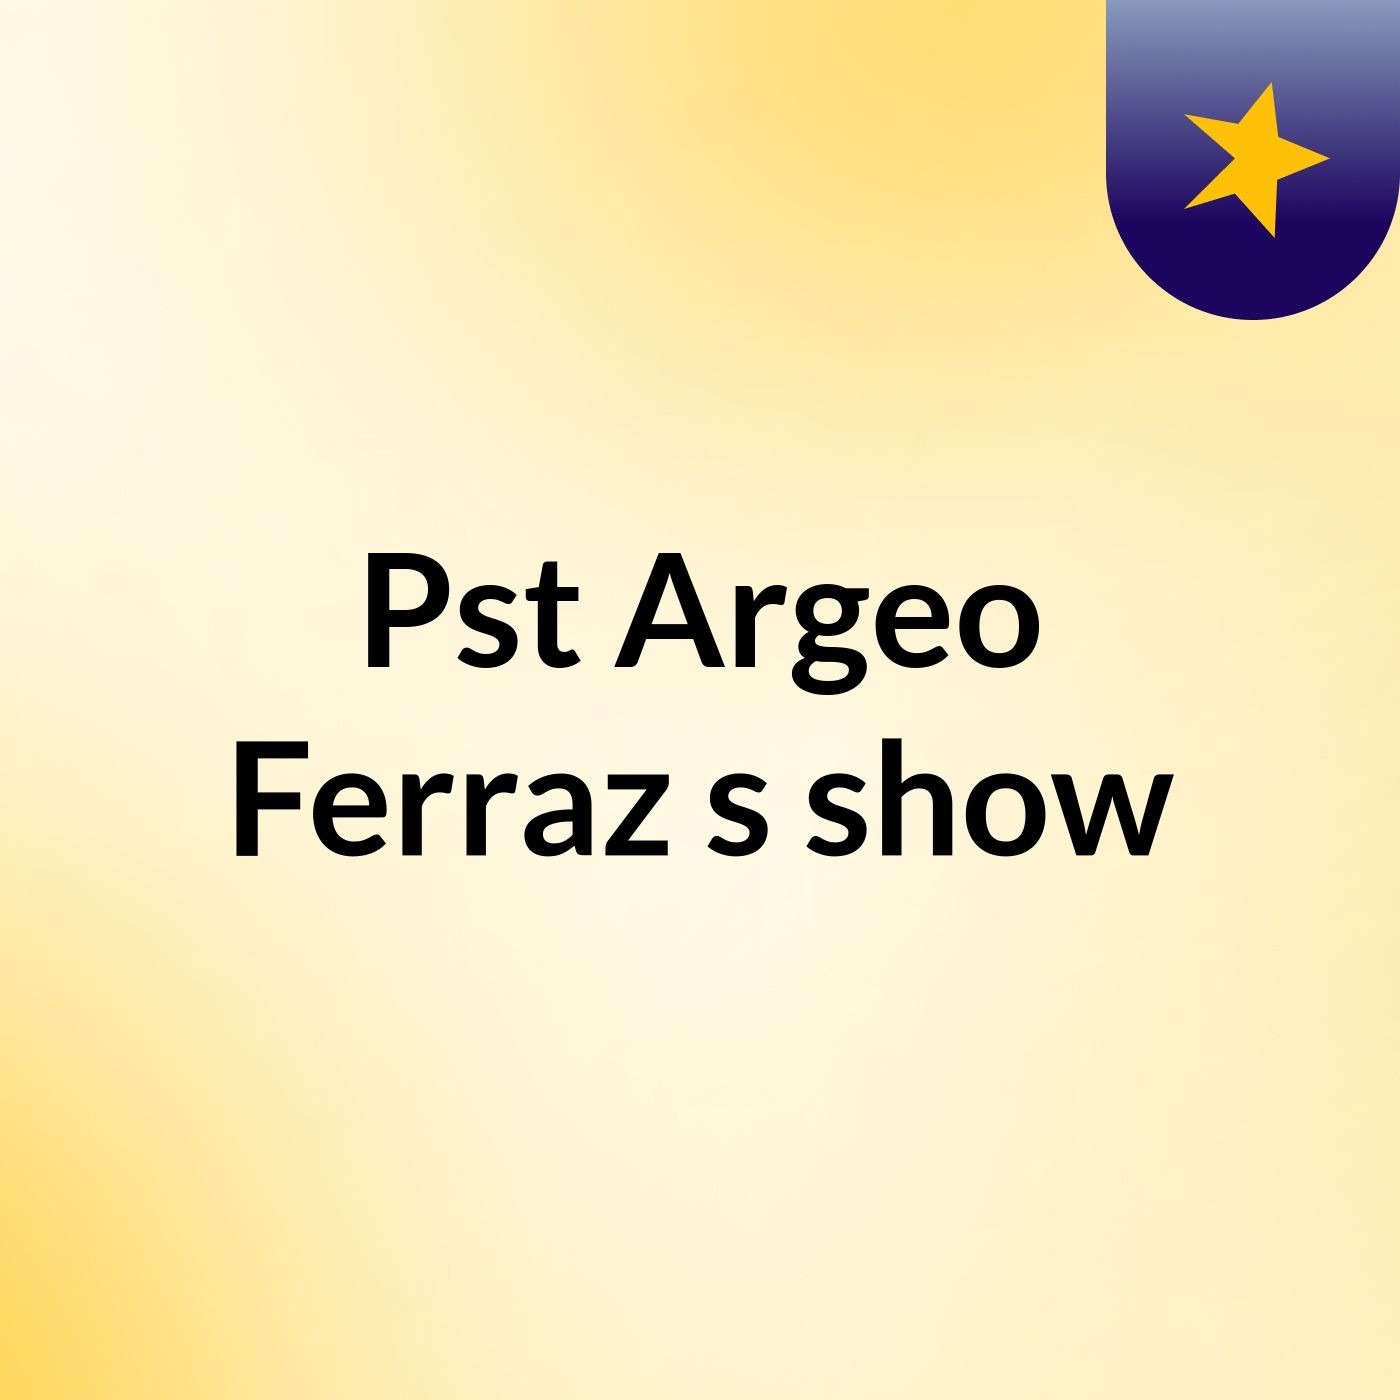 Pst Argeo Ferraz's show